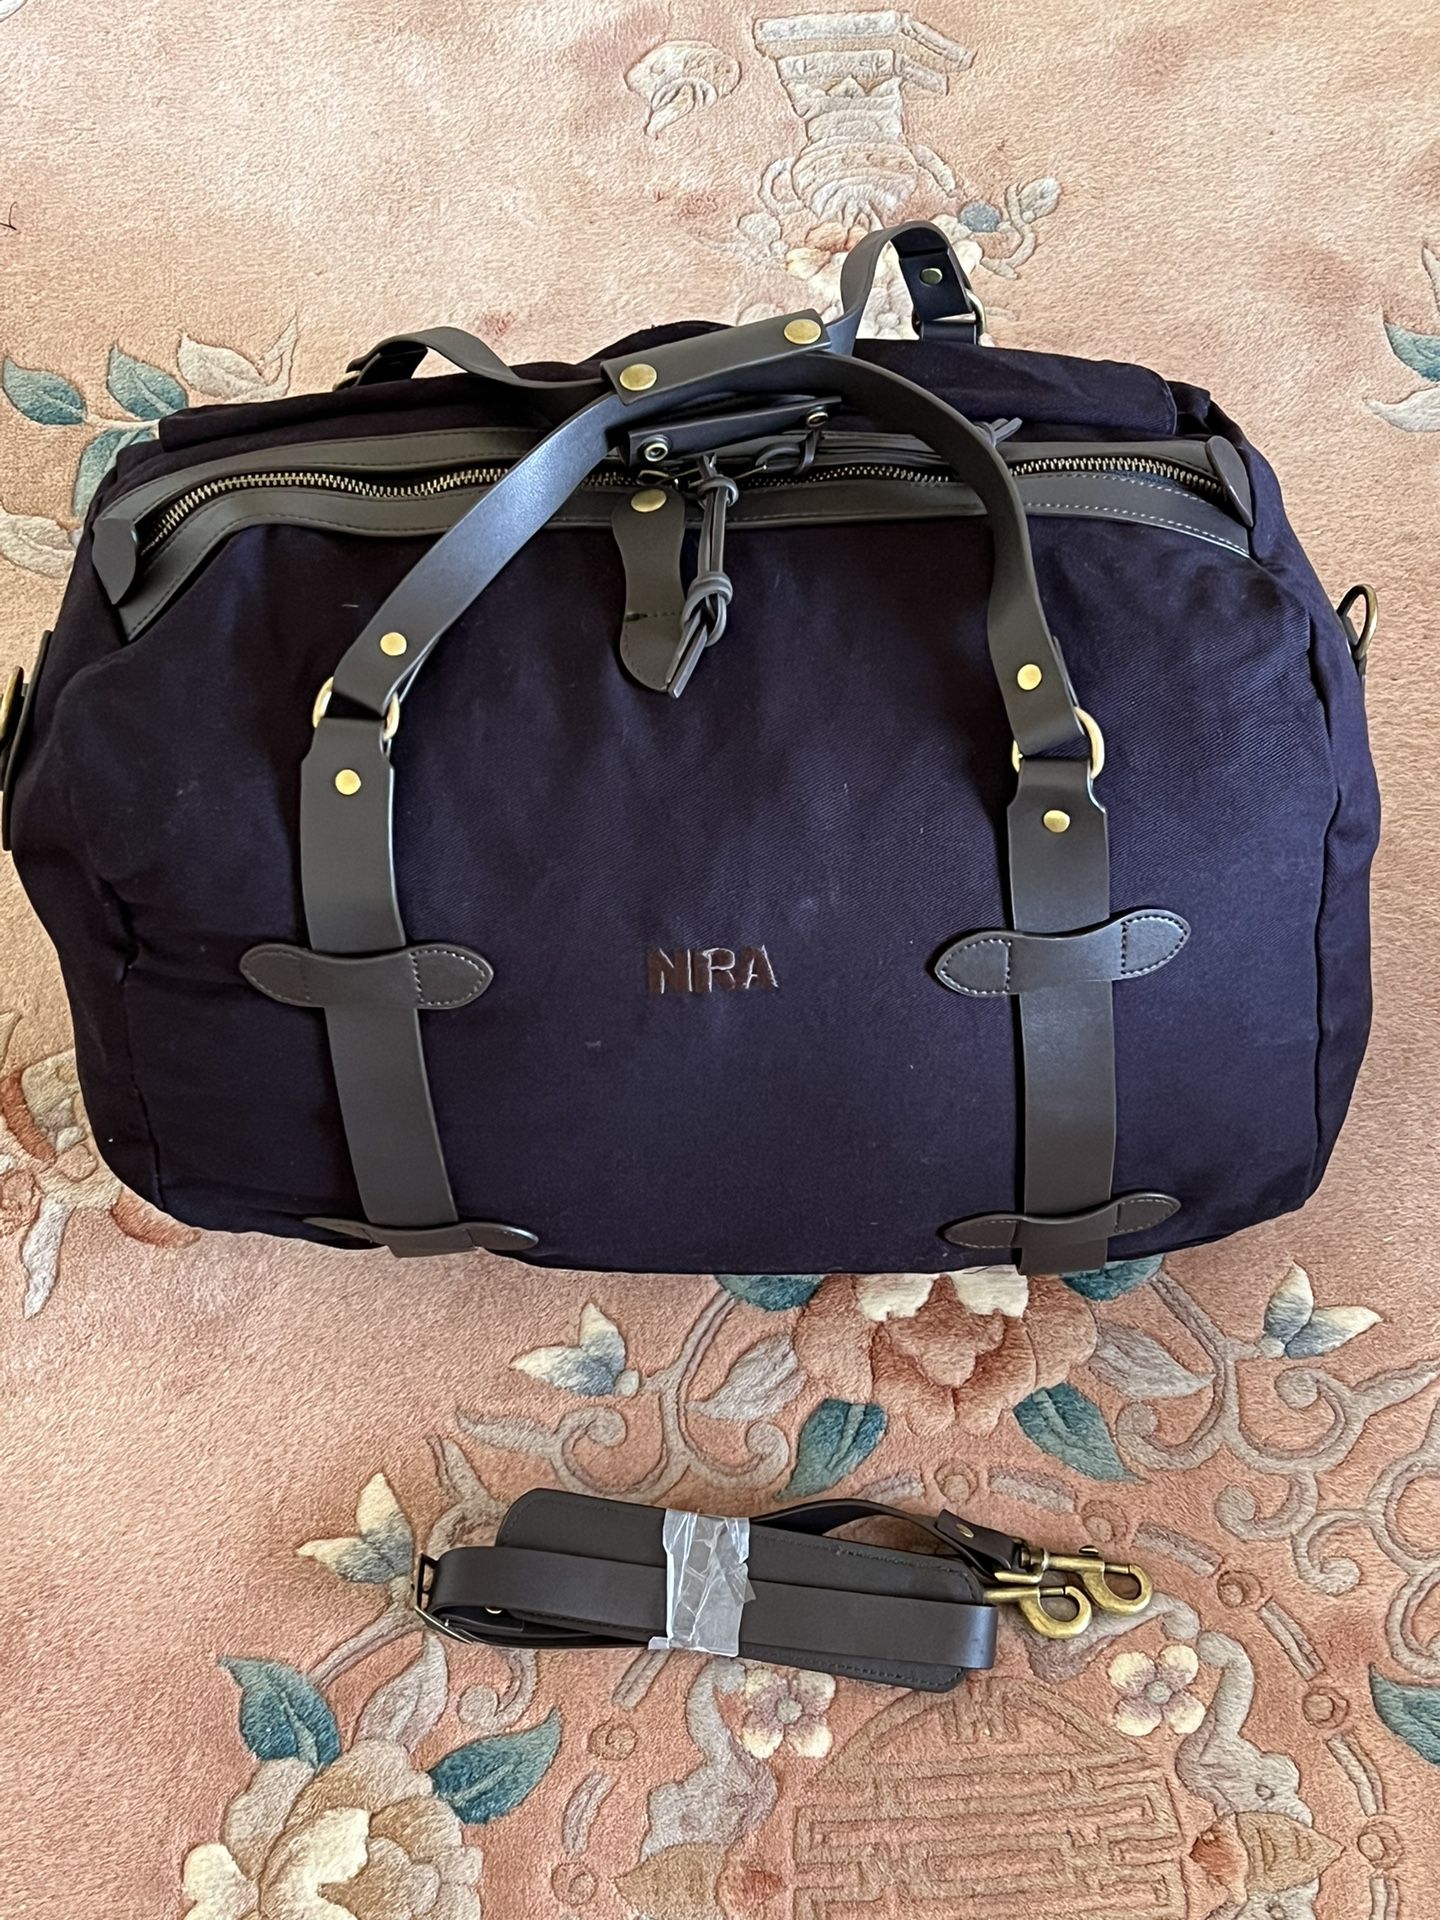 NRA Bag Brand New 